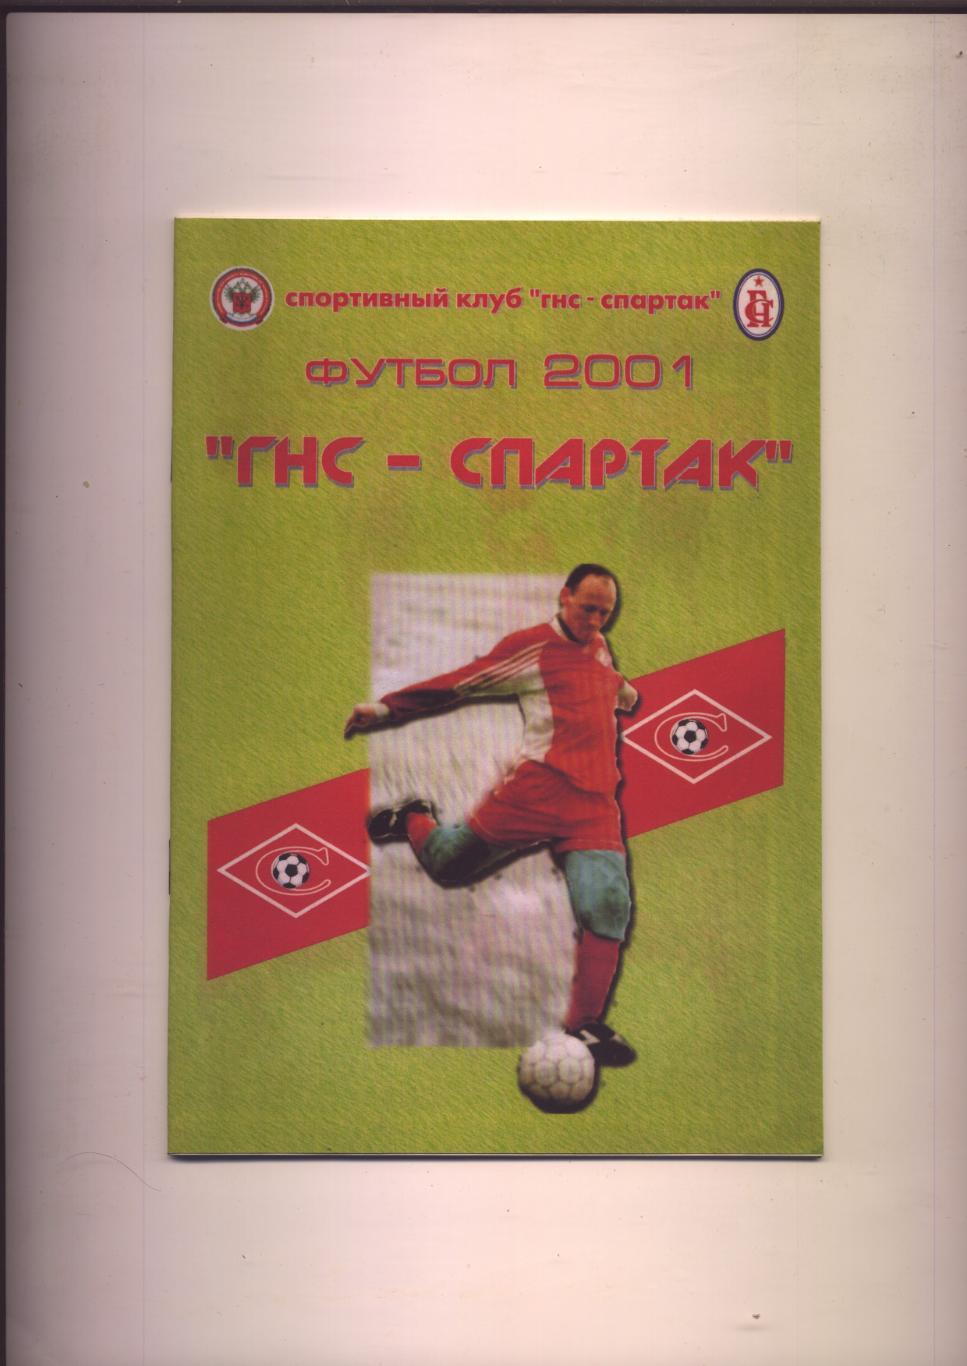 Футбол 2001 ГНС-Спартак Краснодар Итоги 2000 года 16 стр.+ 4 стр. цветные фото.